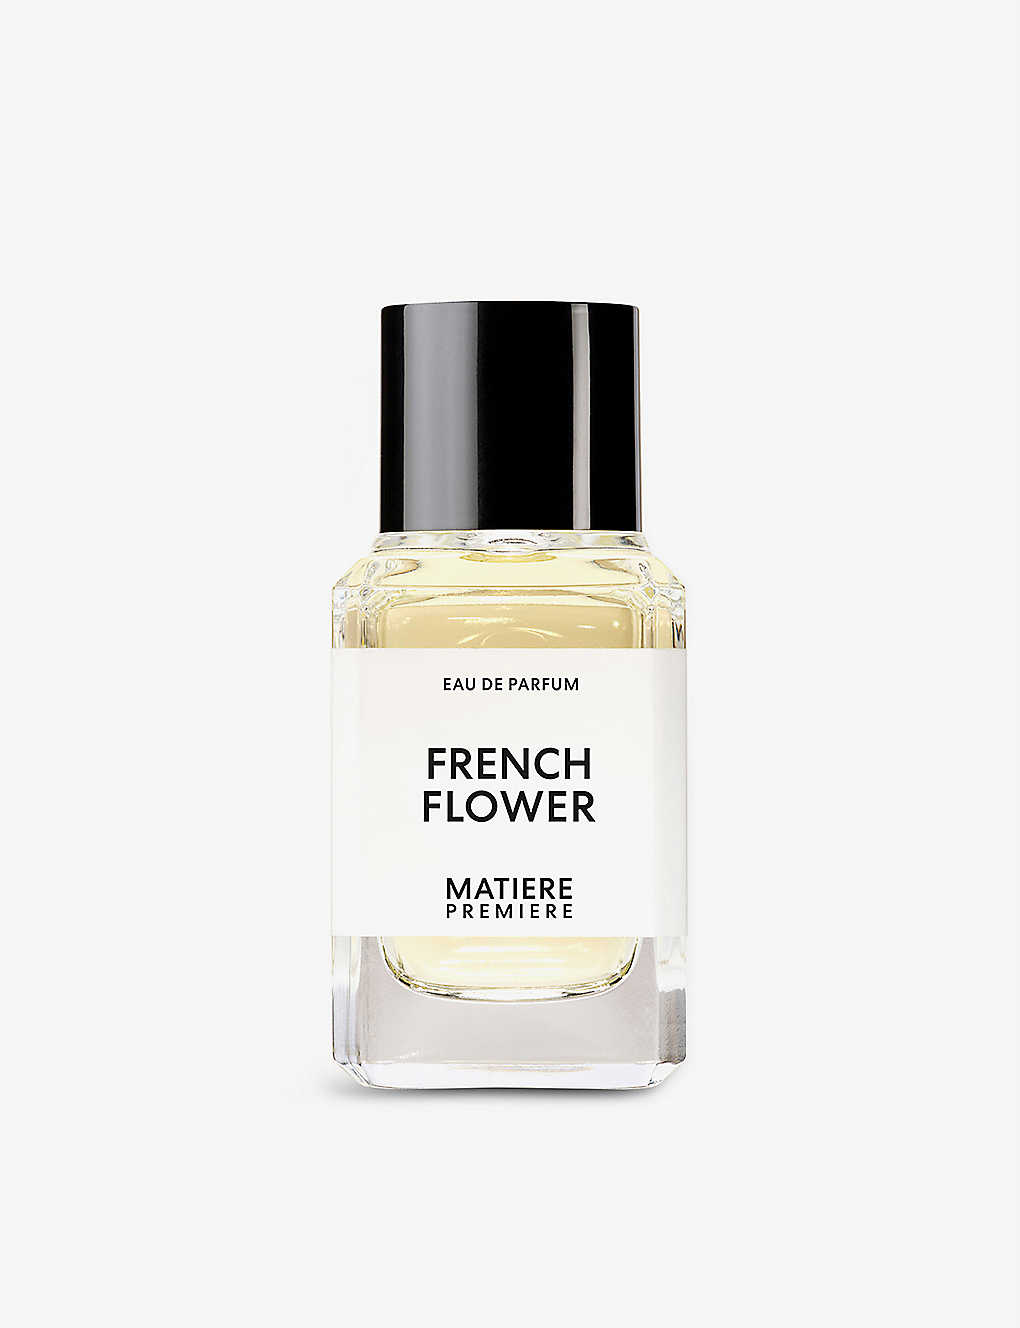 Matiere Premiere French Flower Eau De Parfum